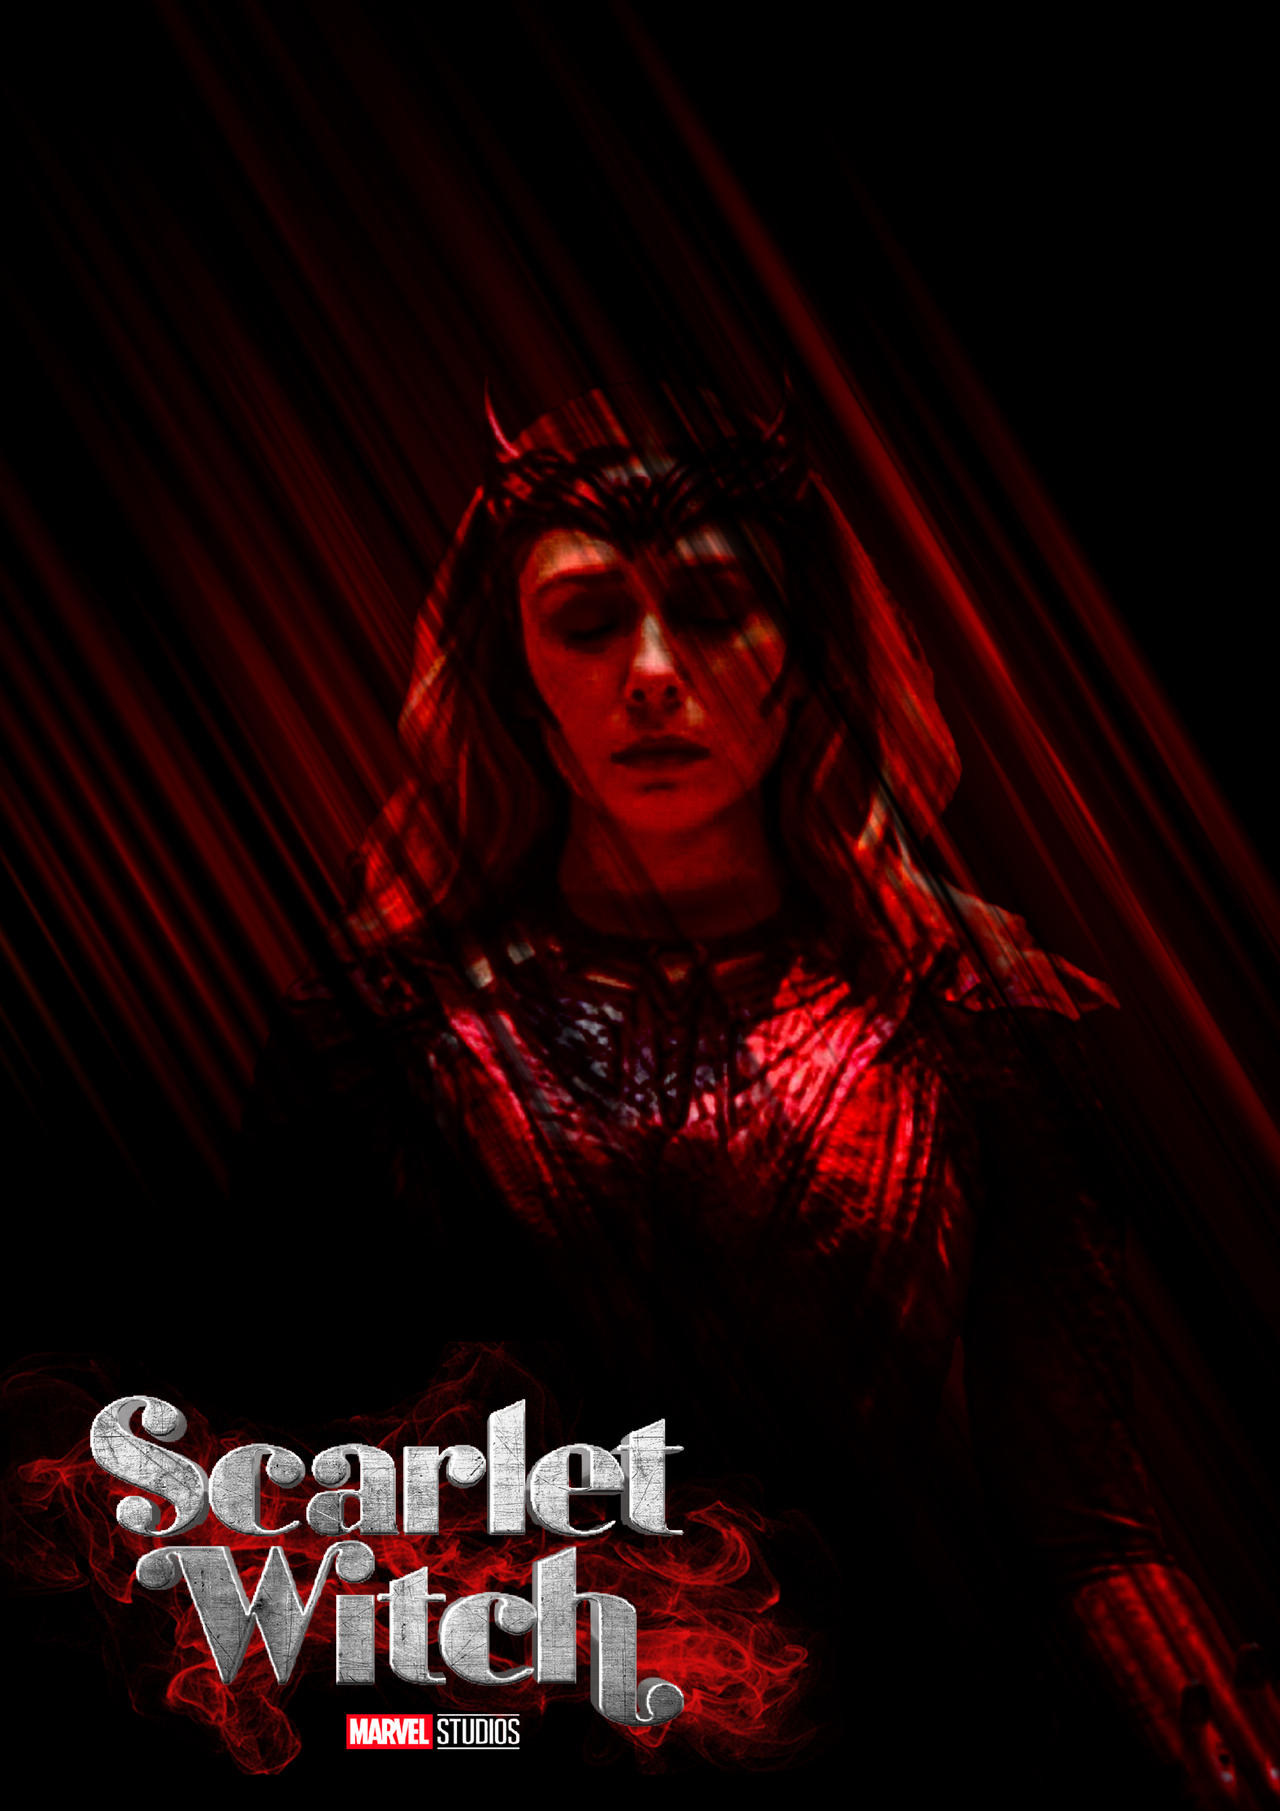 The Scarlet Witch by MizuriAU on DeviantArt